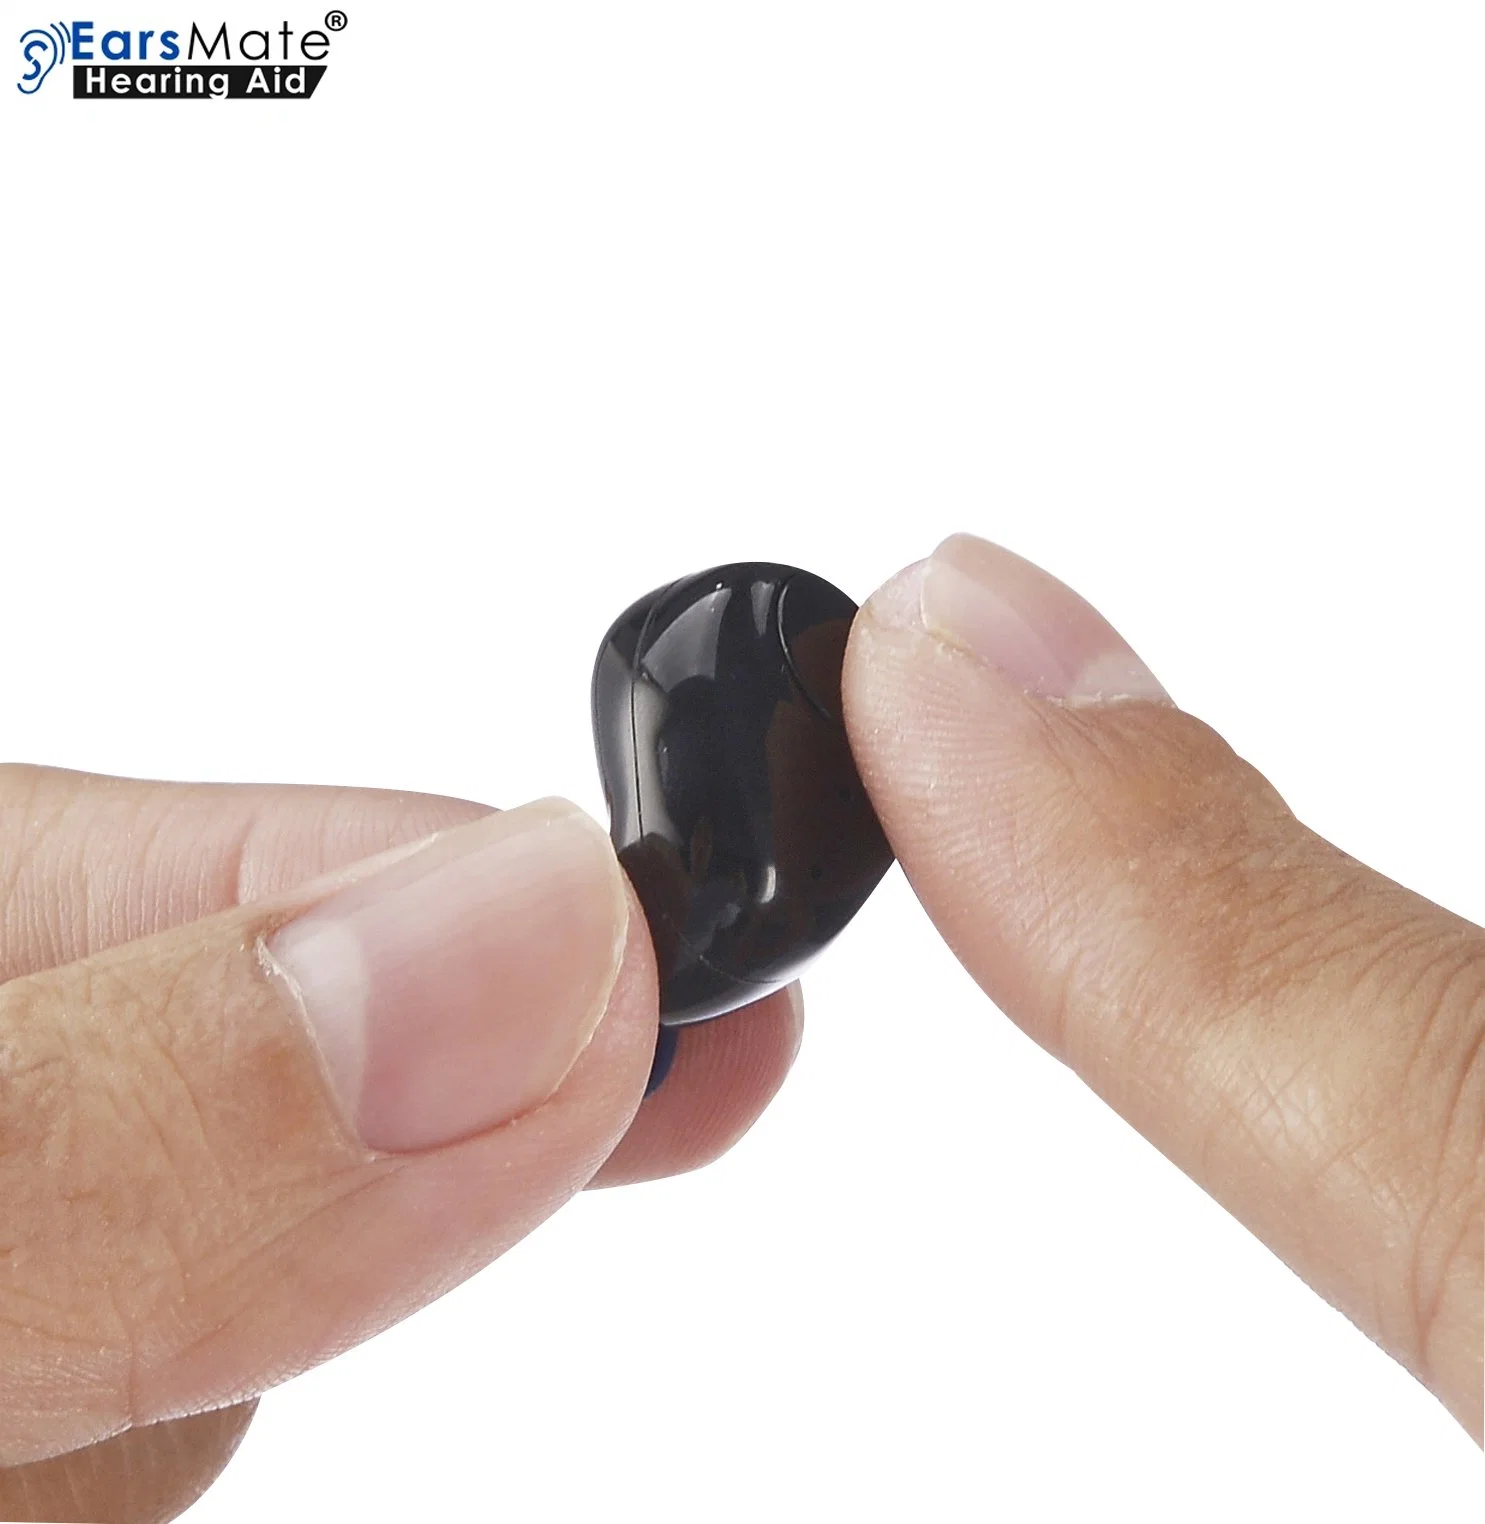 Nuevo vendedor 2pcs Mini recargable Audífono de oído no programable de bolsillo de voz analógica amplificador de sonido audición sida médicos Earsmate producto Bluetooth G18